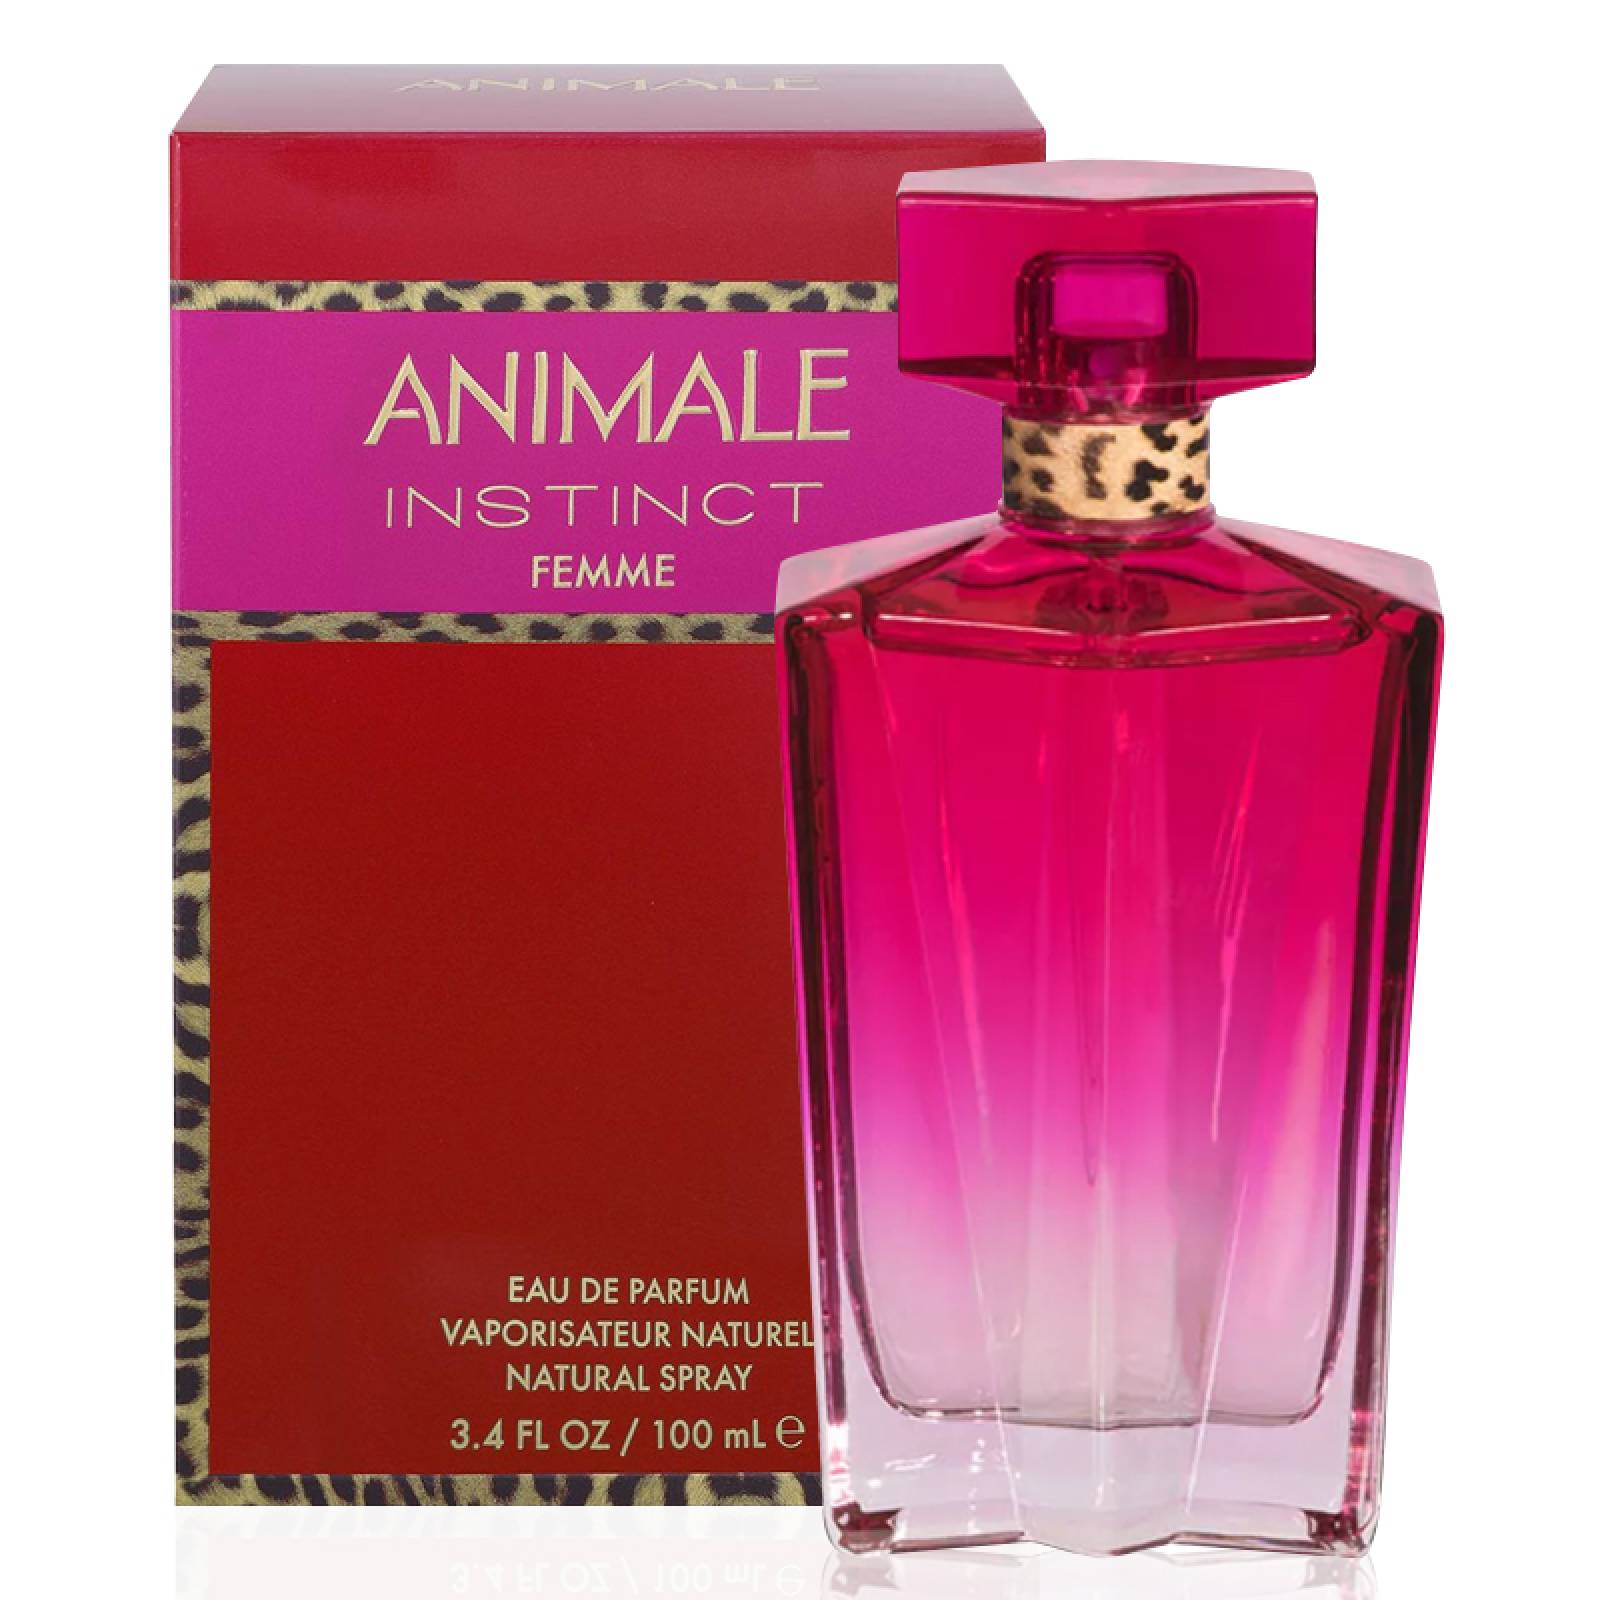 Animale Instinct 100 ml Eau de Parfum Spray de Animale